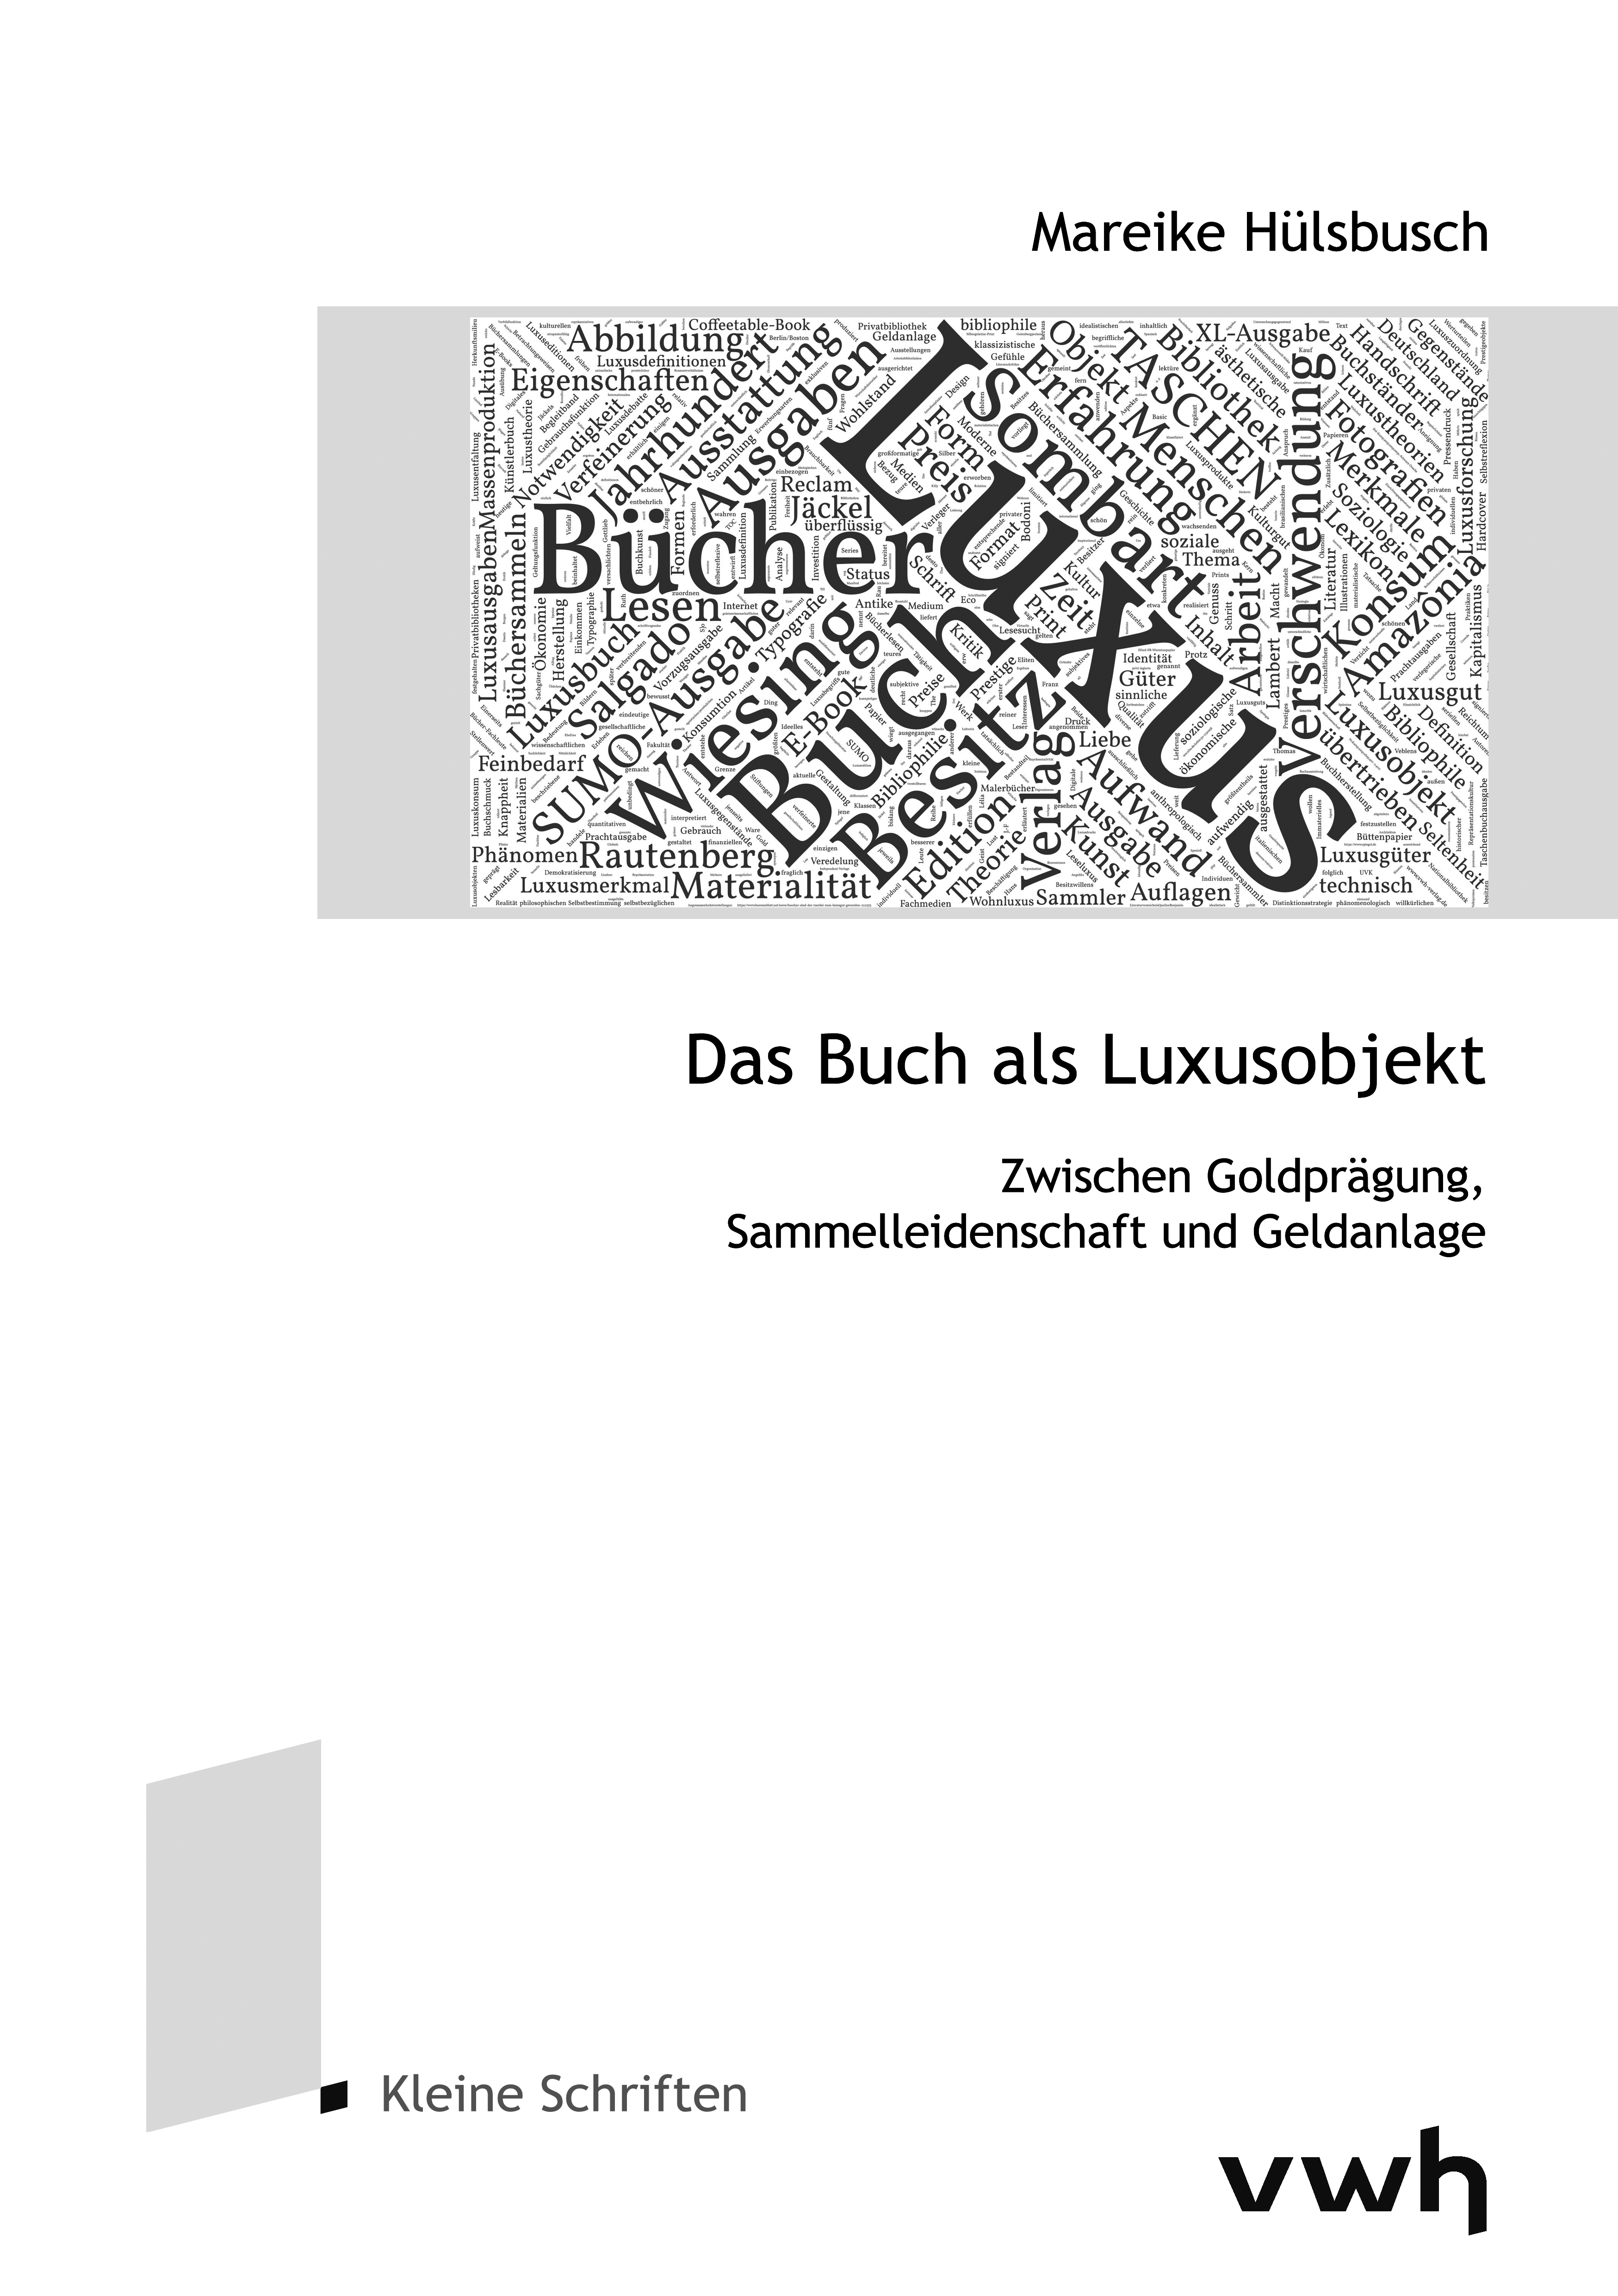 Cover Hülsbusch_600dpi